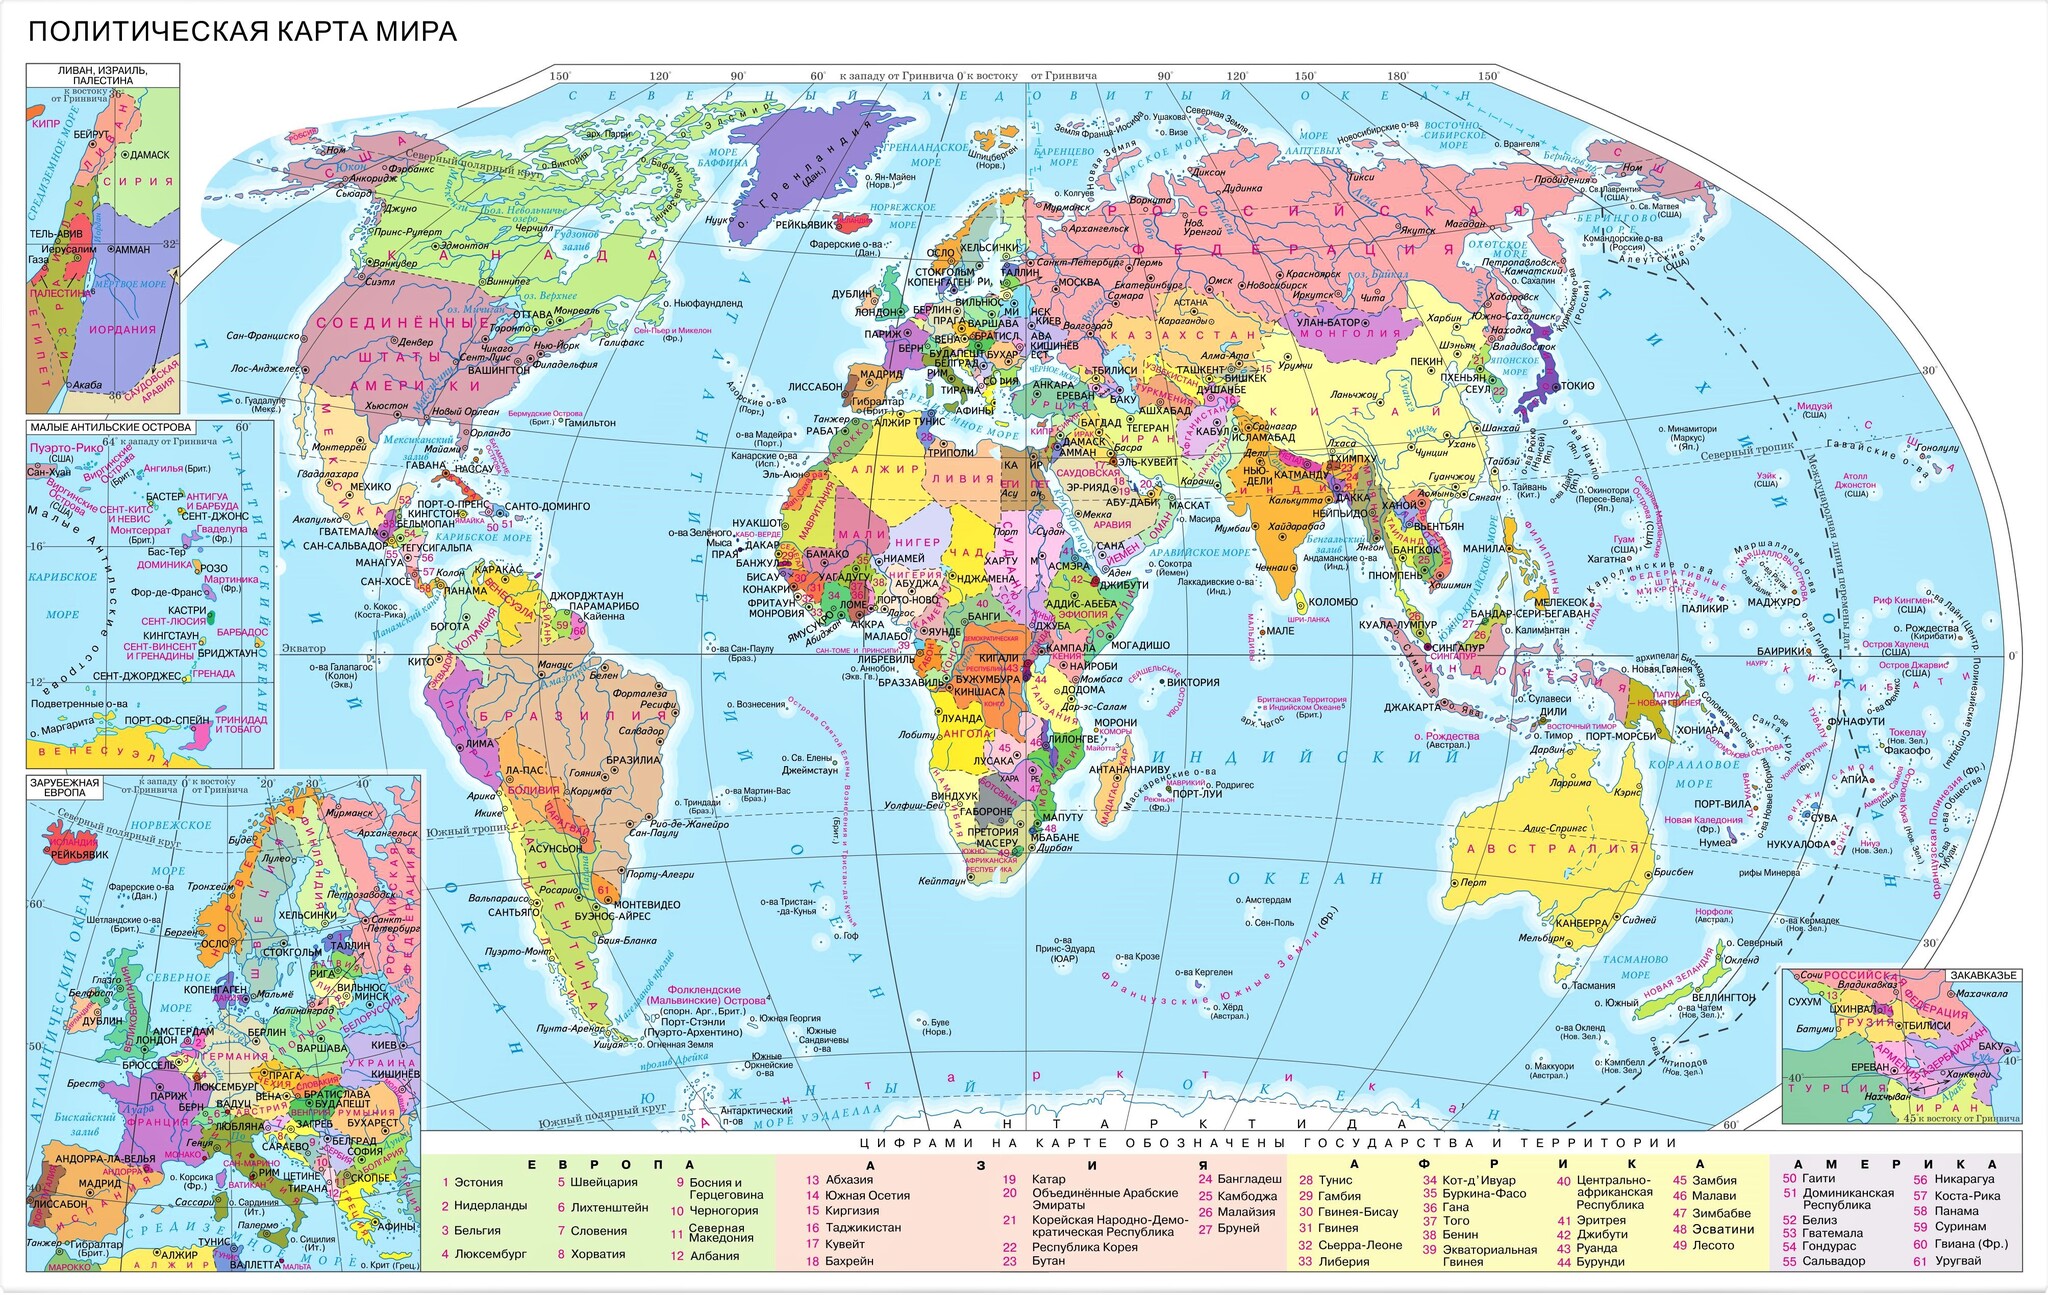 Политическая карта мира Ди Эм Би 1:15 млн